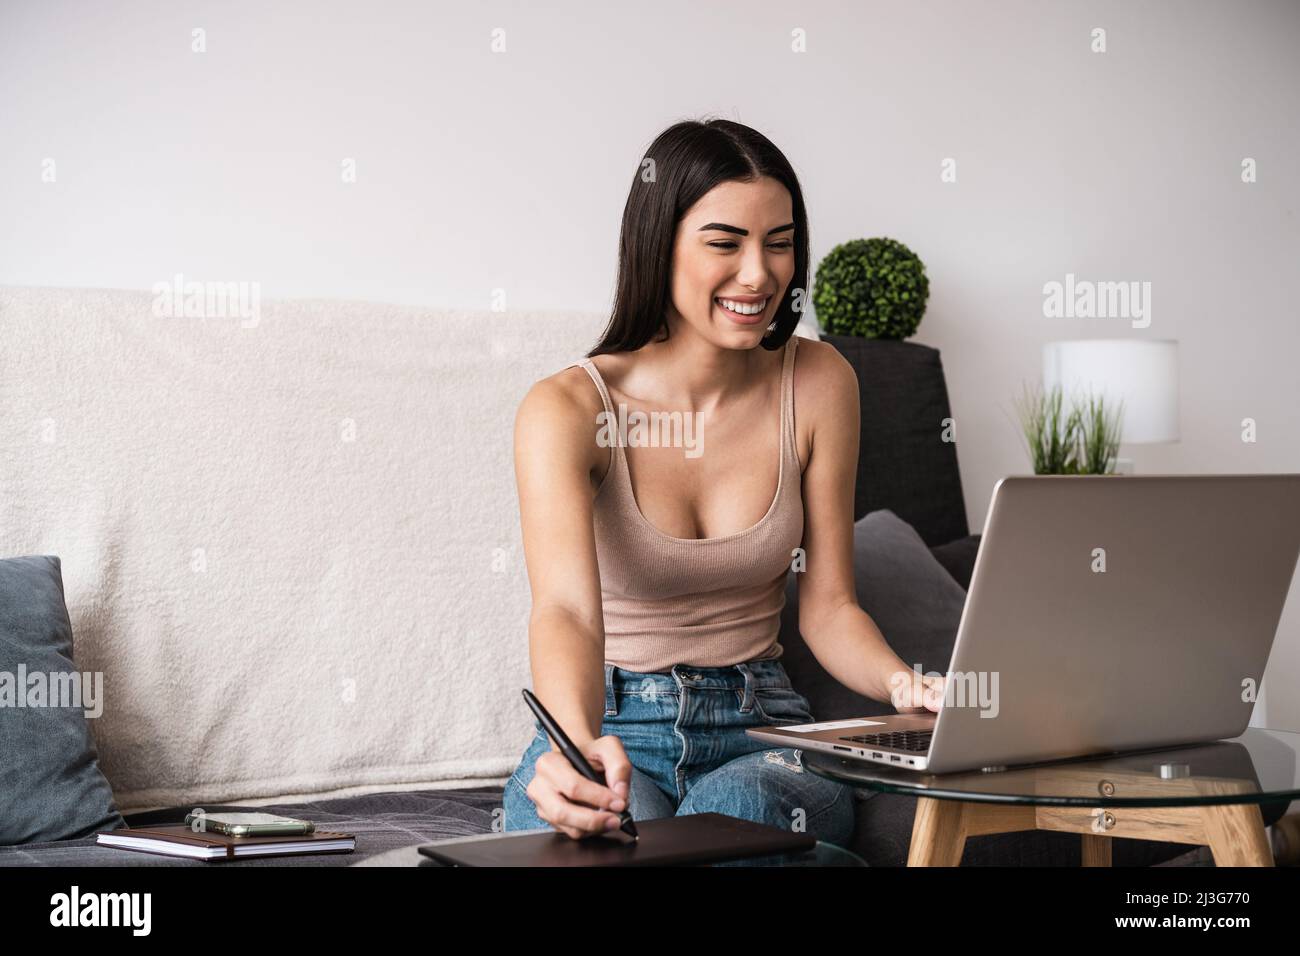 Jeune femme travaillant sur un ordinateur portable à domicile - concept de travail professionnel et intelligent Banque D'Images